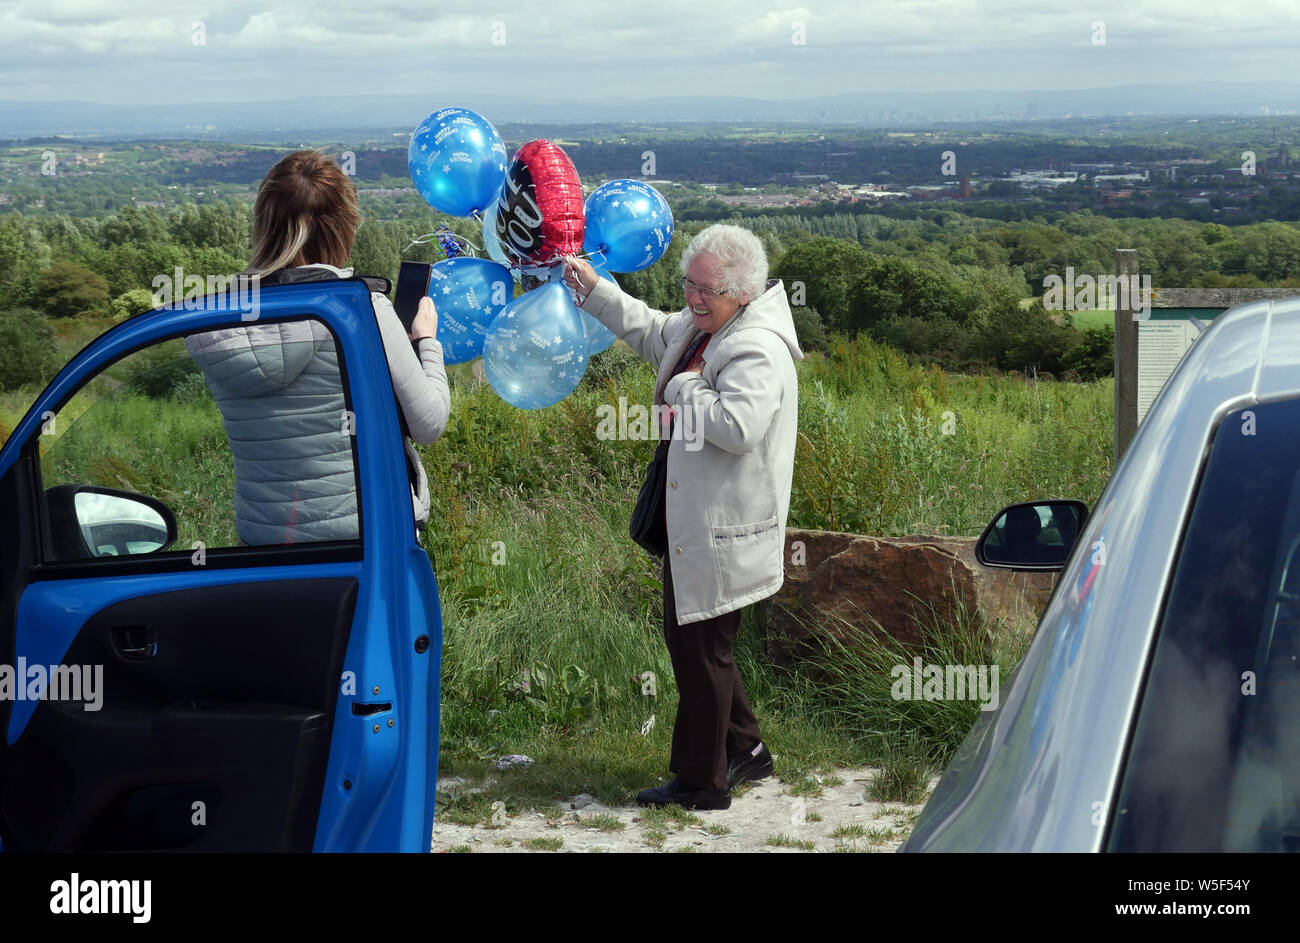 Ältere Dame freigeben Luftballons, ein Ballon ist eine Herzform sagen "Ich liebe Dich", wie eine junge Dame zeichnet die Veranstaltung mit Ihrem Smart Phone auf einem Parkplatz Stockfoto